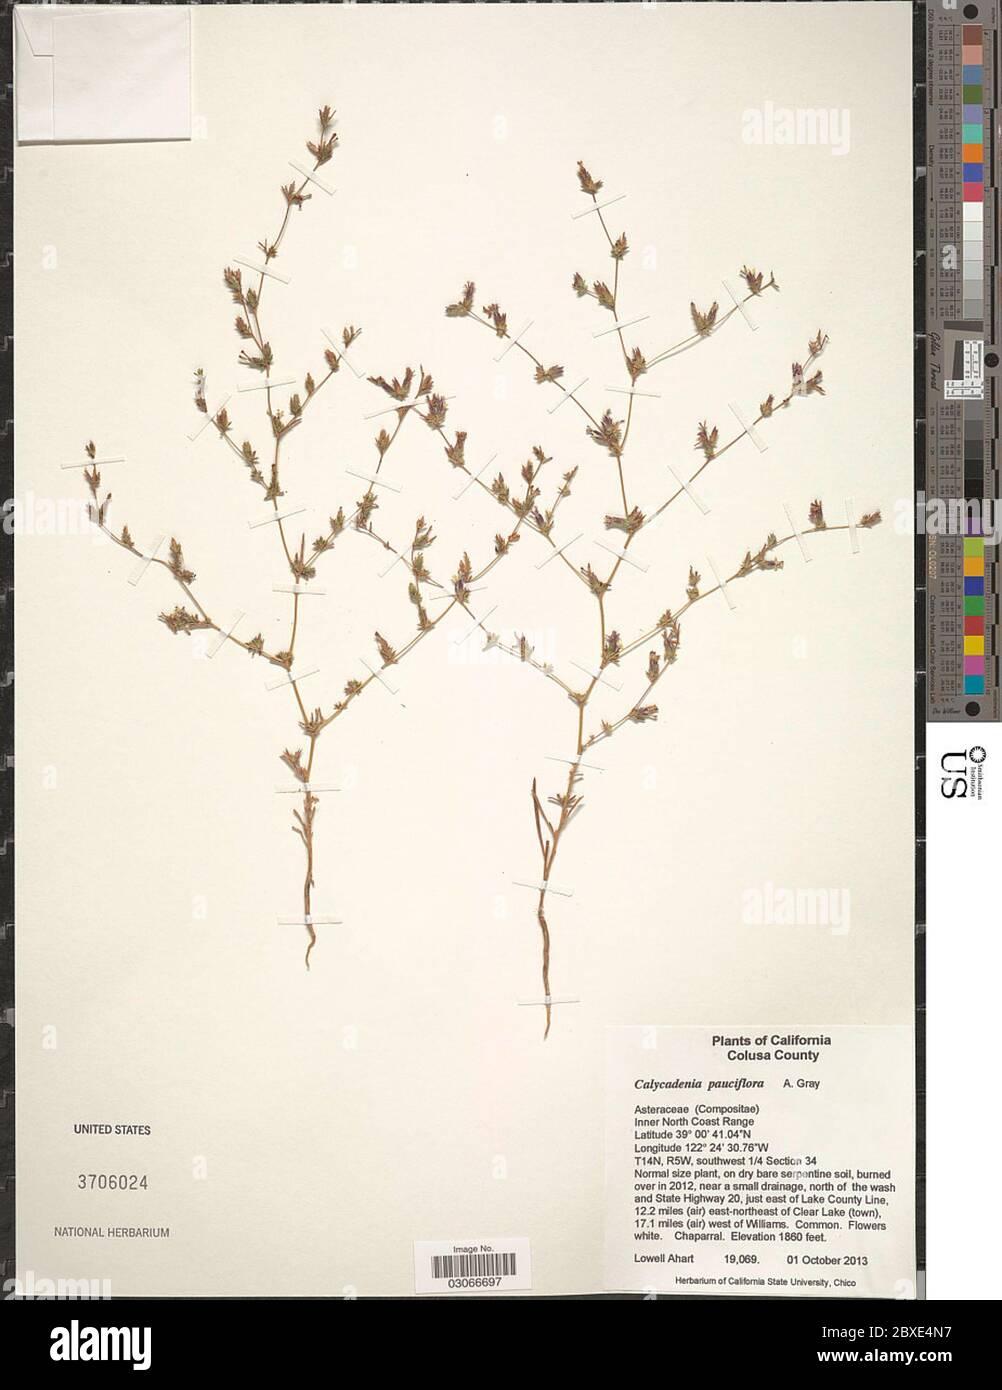 Calycadenia pauciflora A Gray in Emory Calycadenia pauciflora A Gray in Emory. Stock Photo